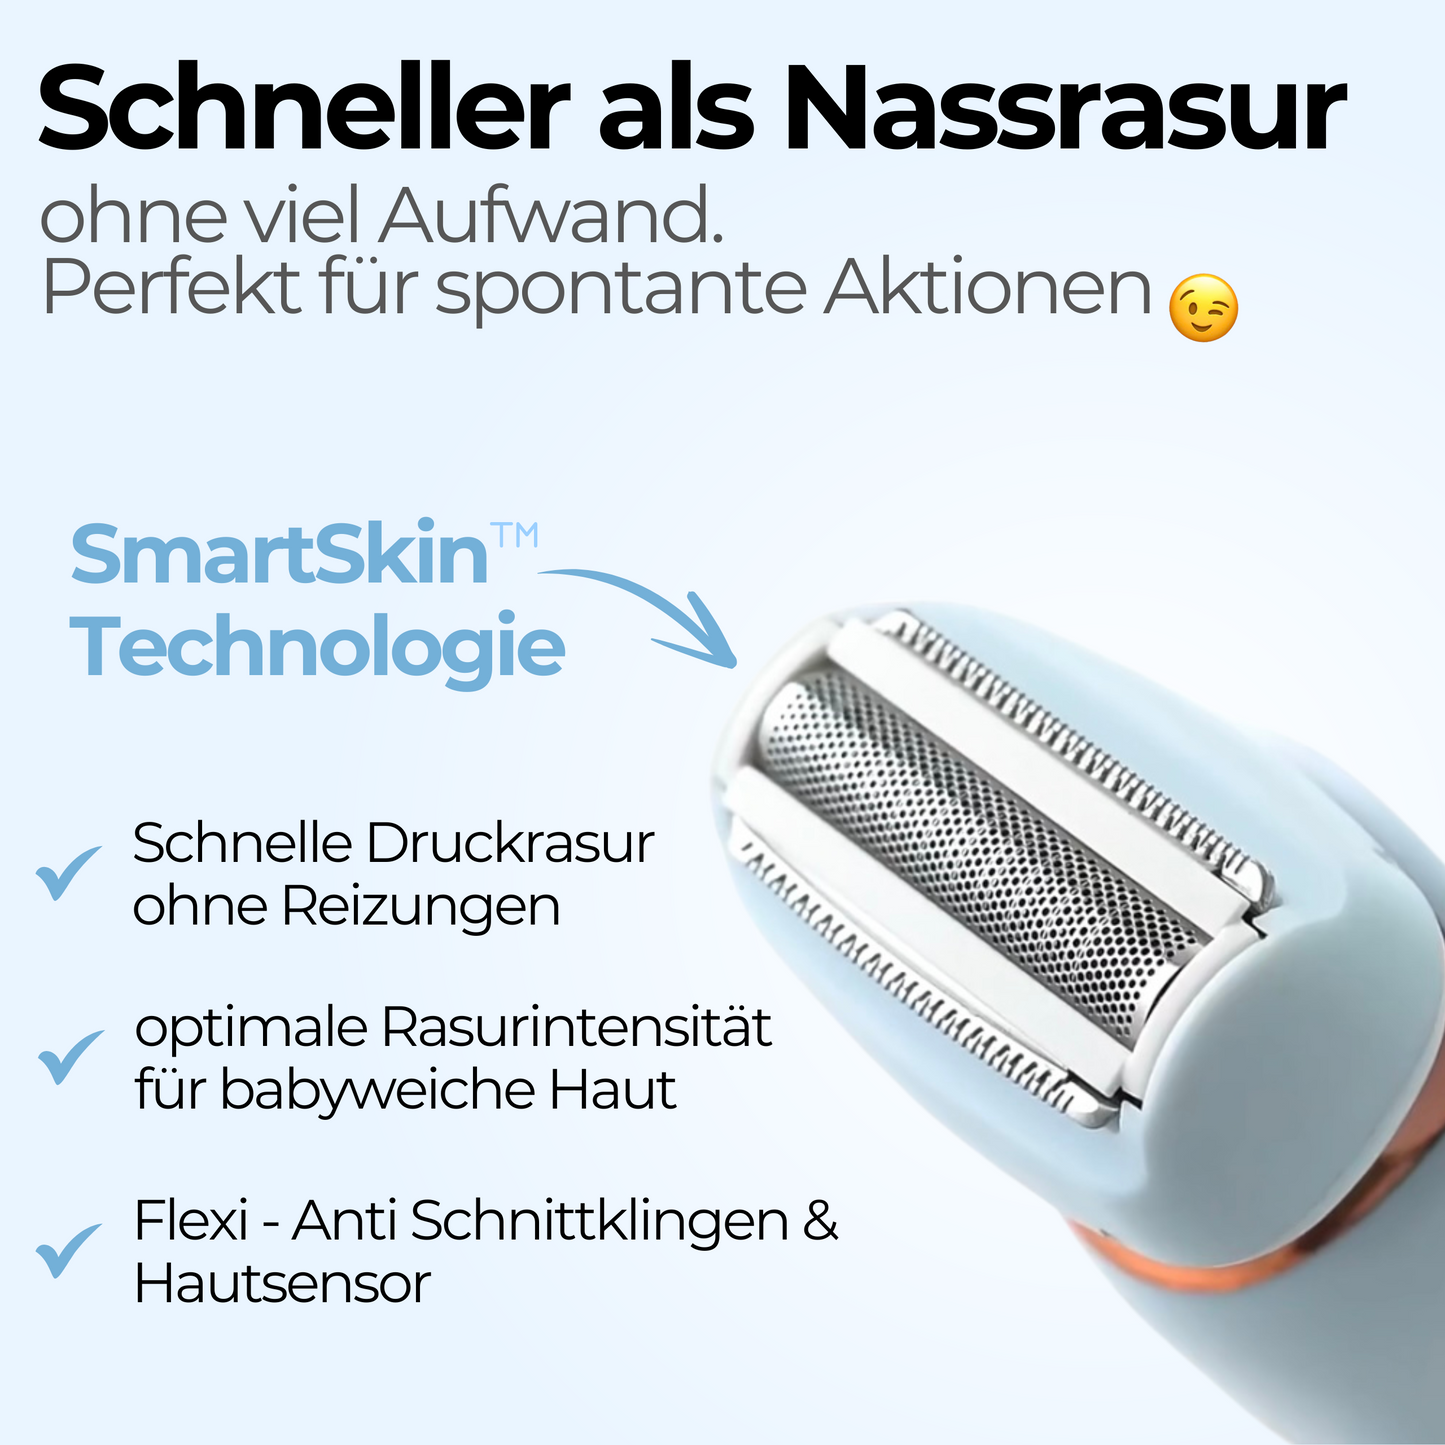 SkinGlow™ Pro - Nanorasierer für seidig glatte Haut in Sekunden